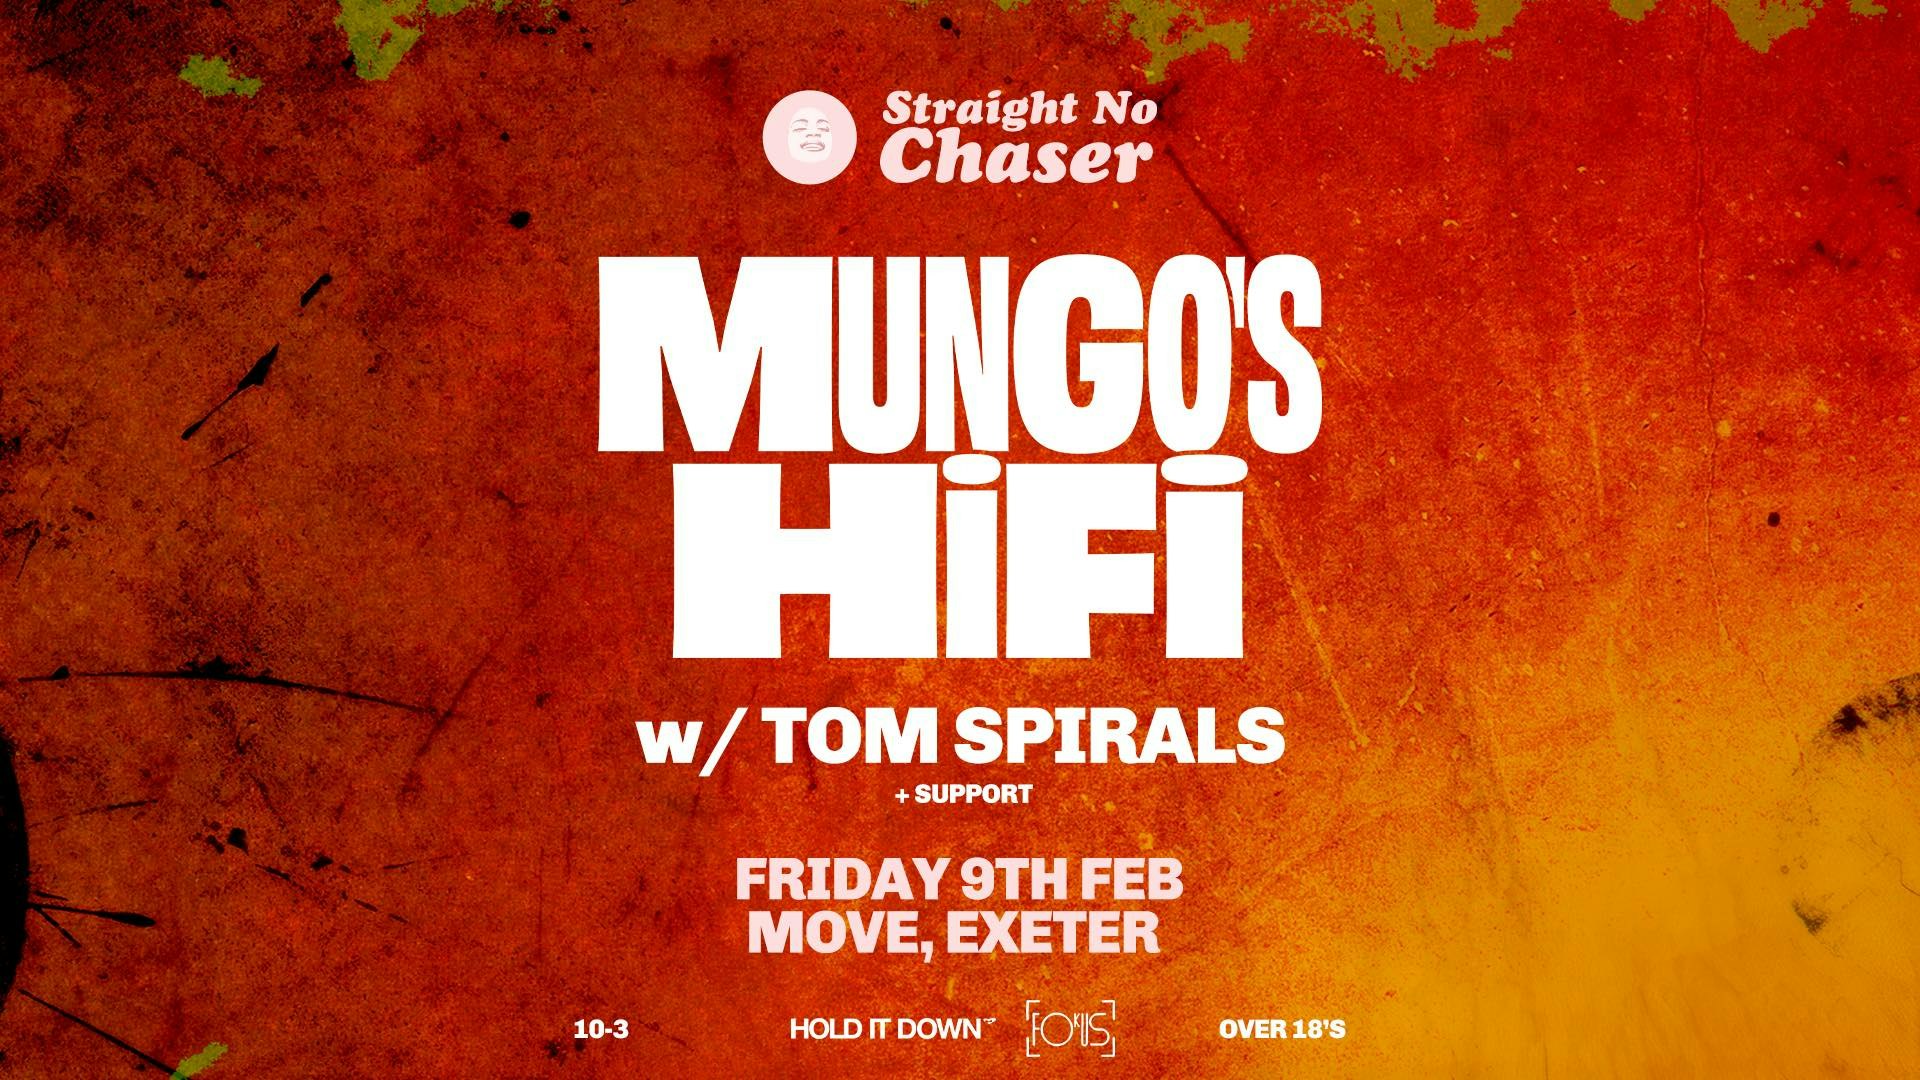 Mungo’s Hi Fi in Exeter